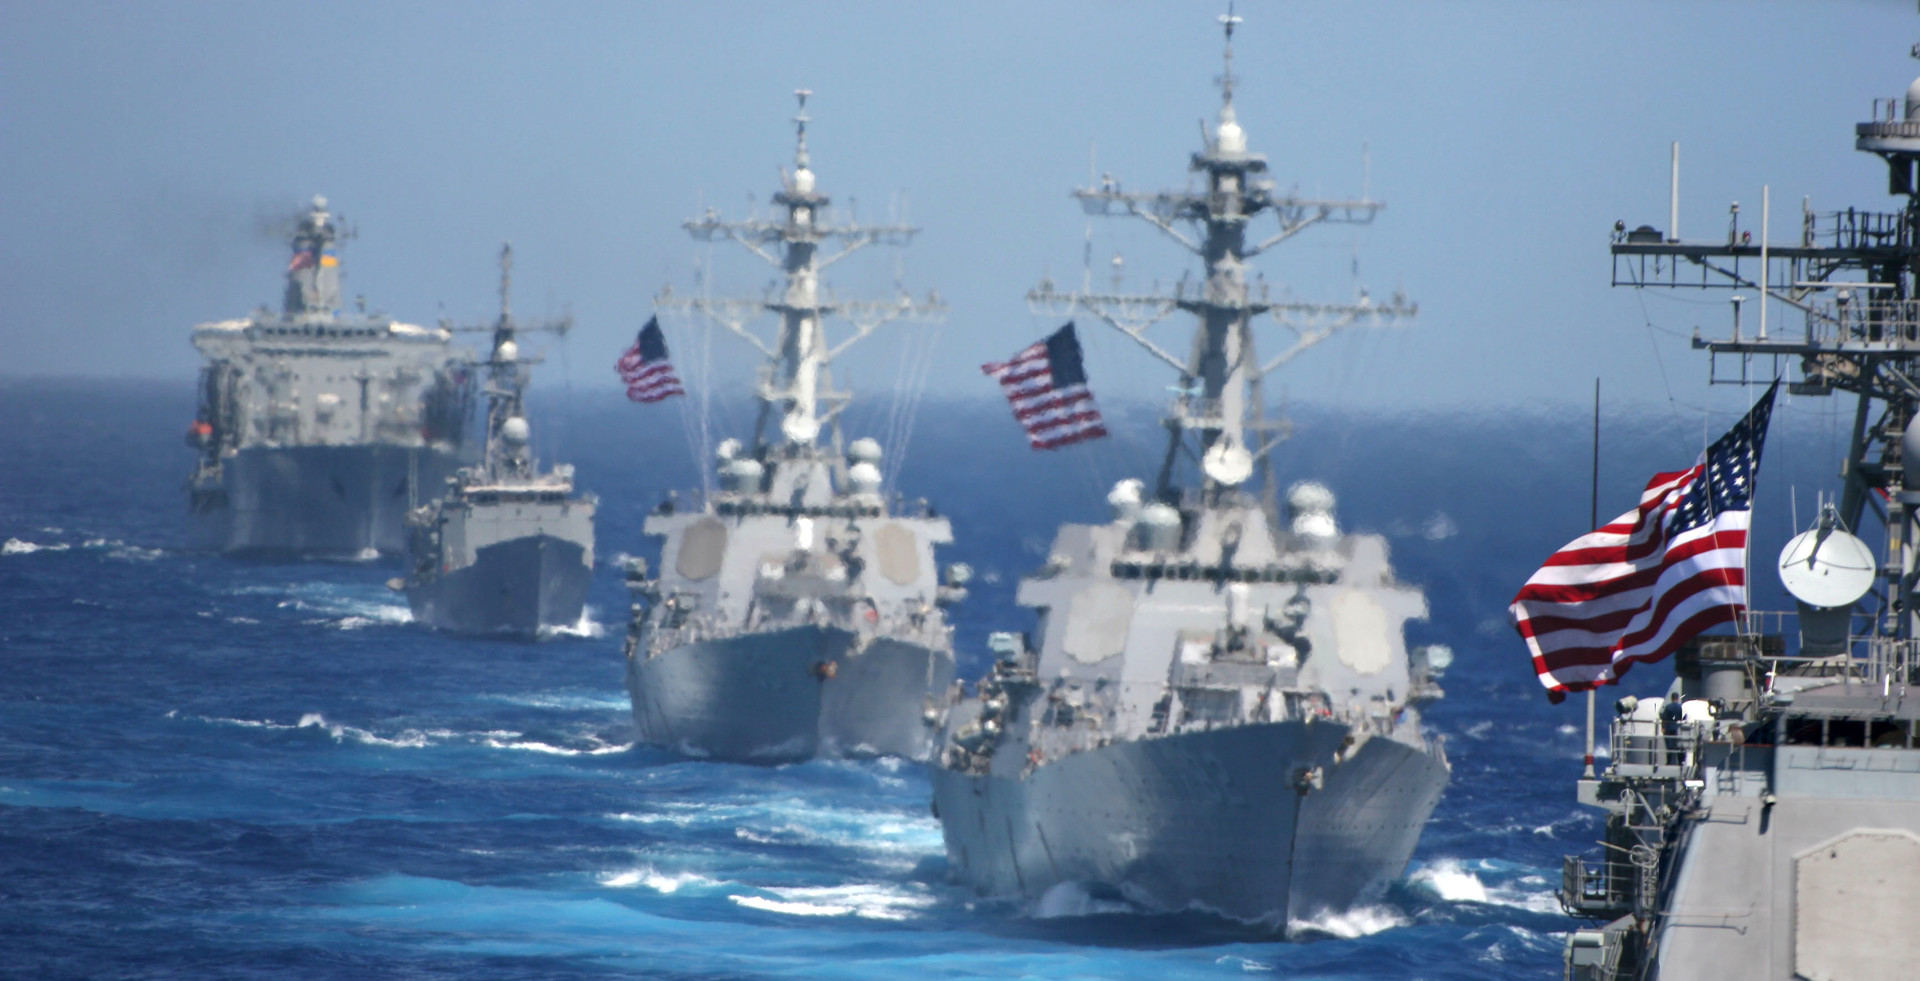 Skupina bojnih ladij, ki jih vodi letalonosilka Kitty Hawk, 2006